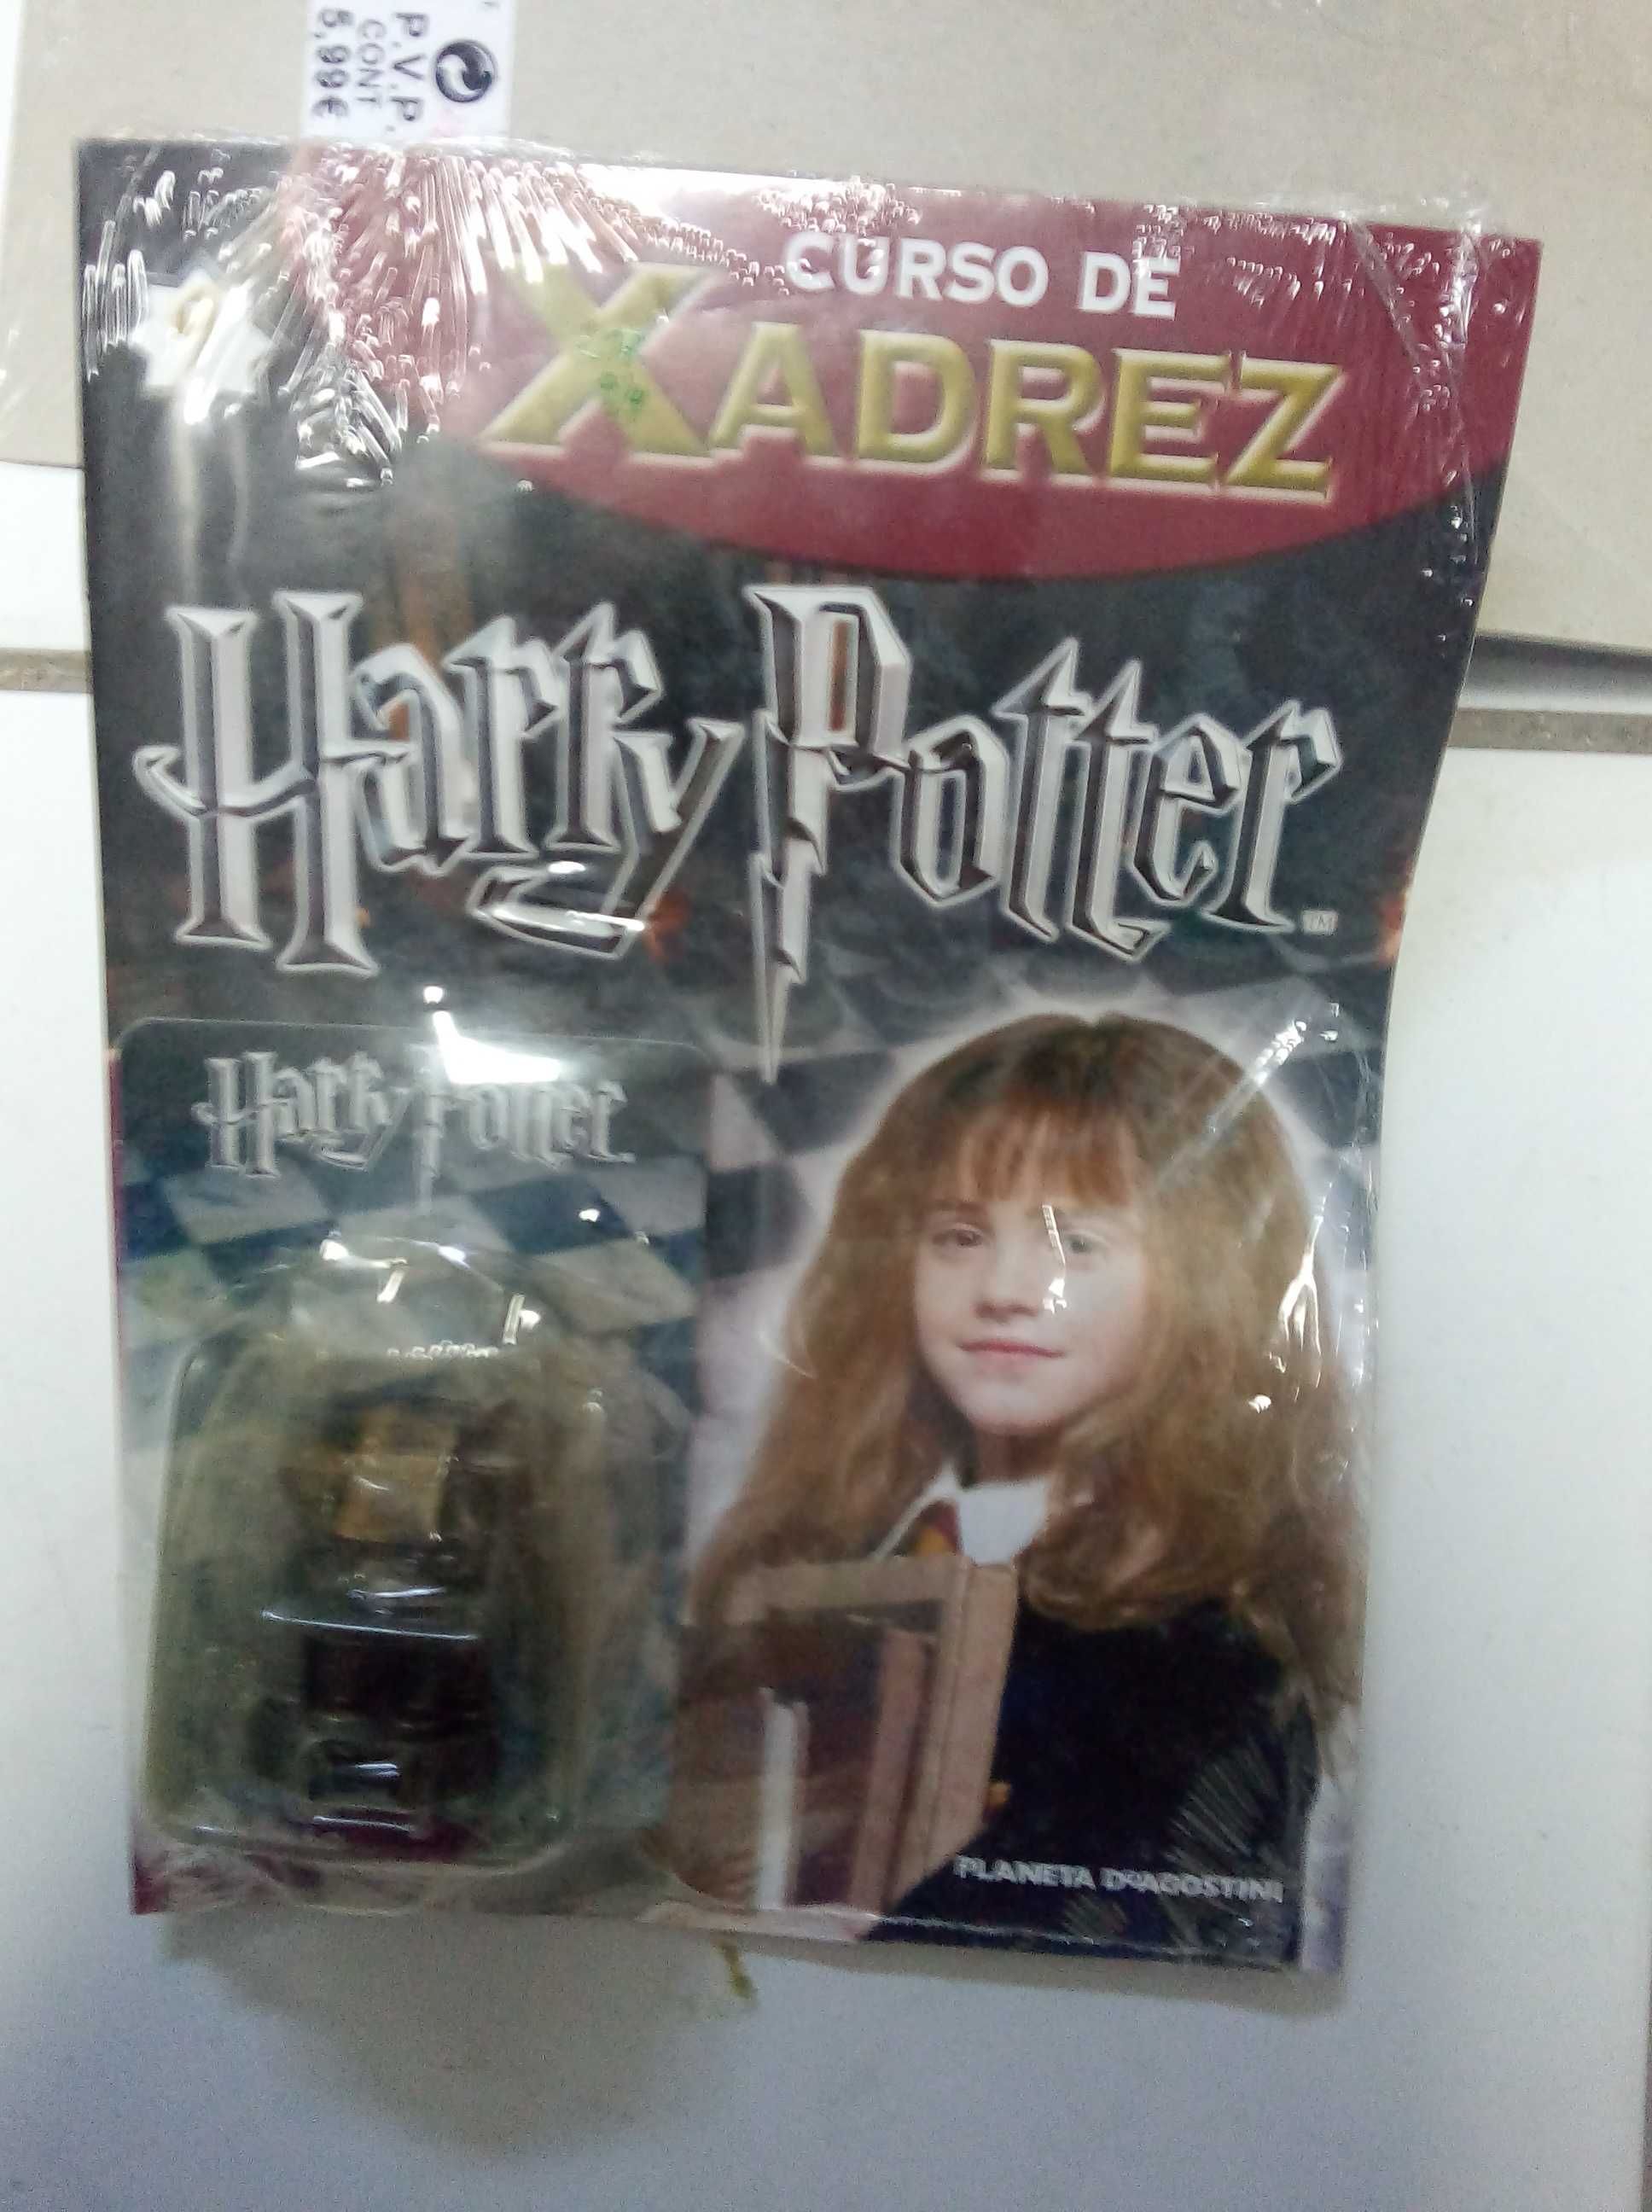 Harry Potter Xadrez